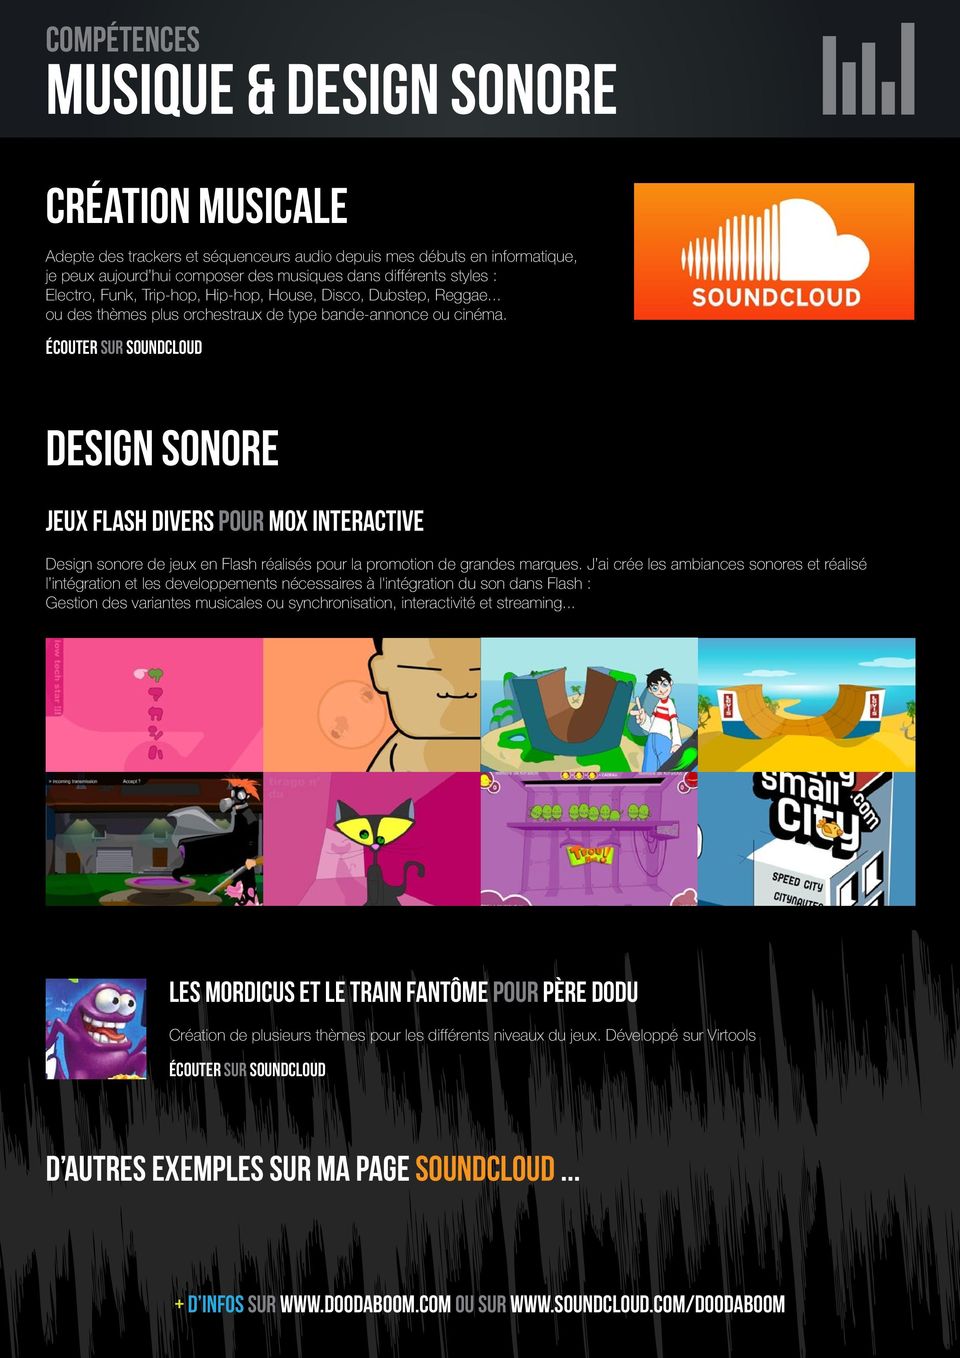 écouter sur soundcloud Design sonore jeux flash divers pour Mox interactive Design sonore de jeux en Flash réalisés pour la promotion de grandes marques.